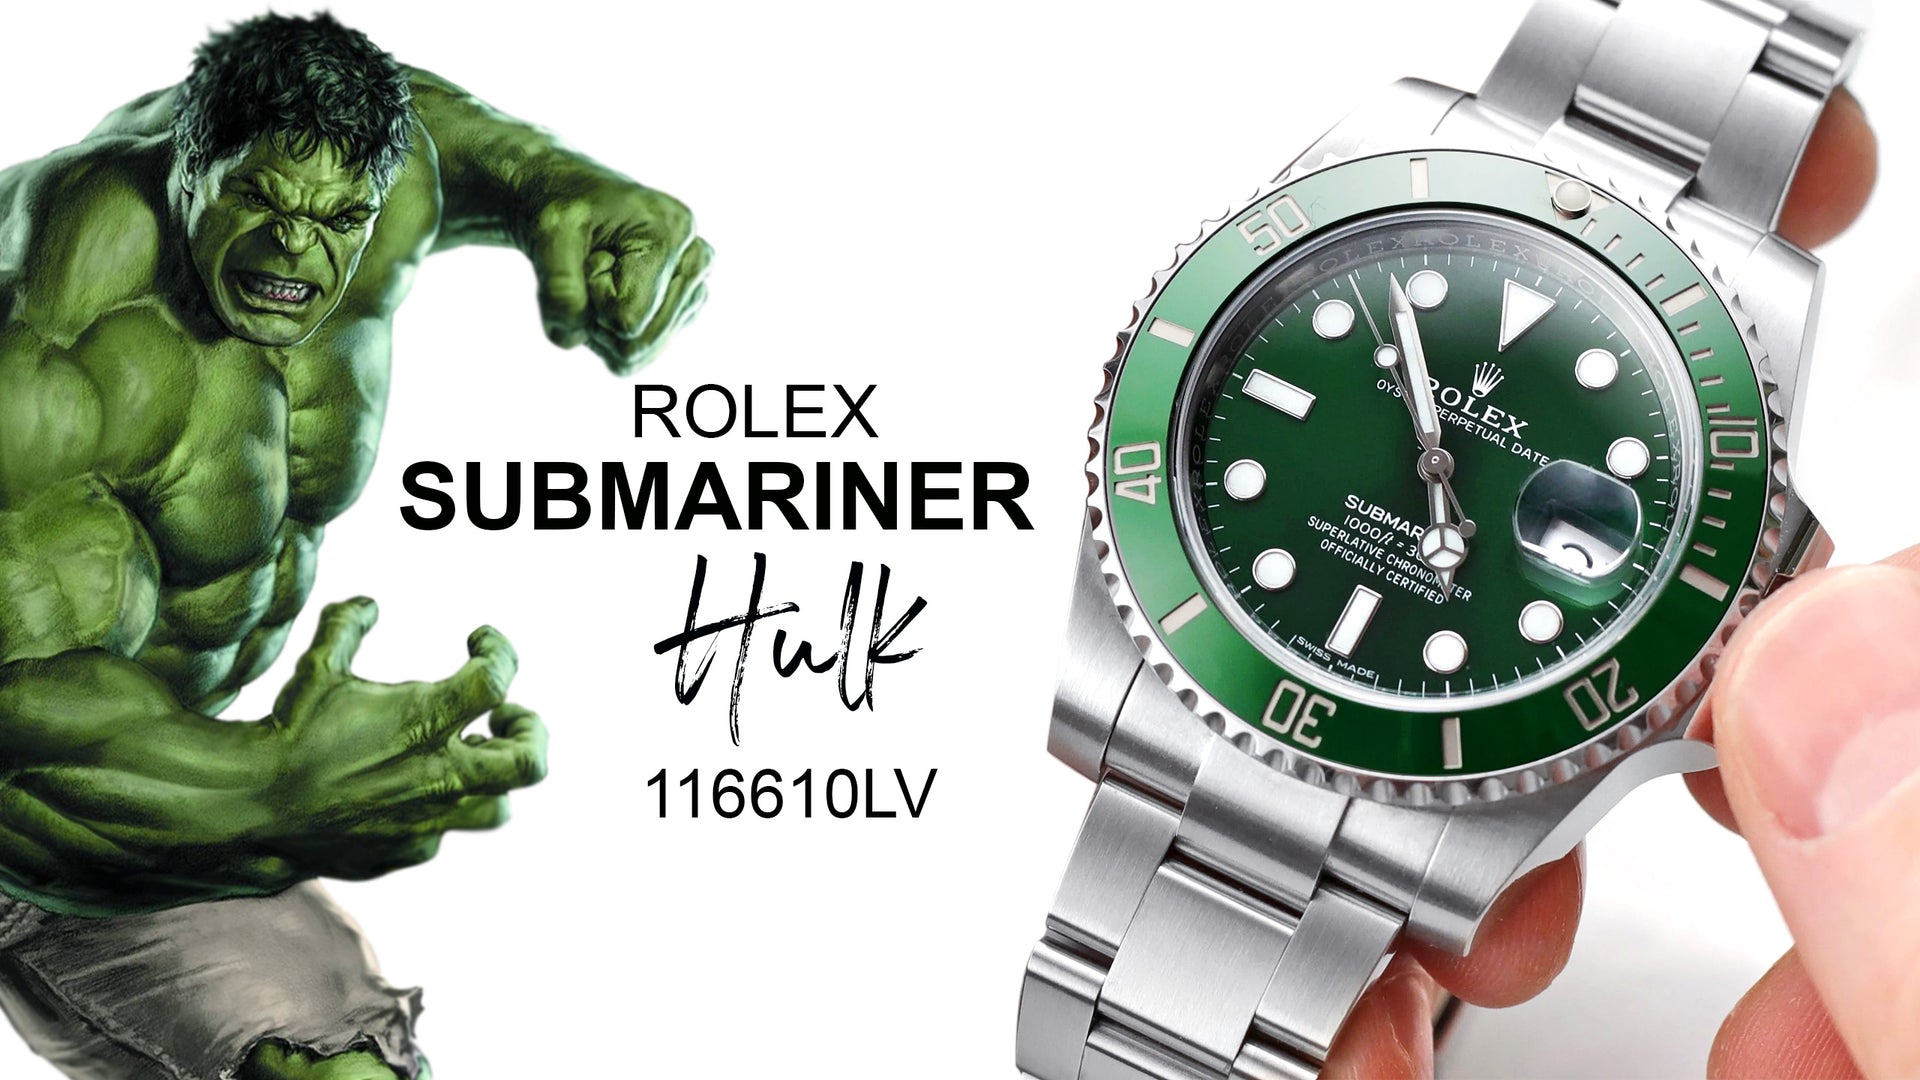 Load video: Rolex Submariner Hulk 116610LV